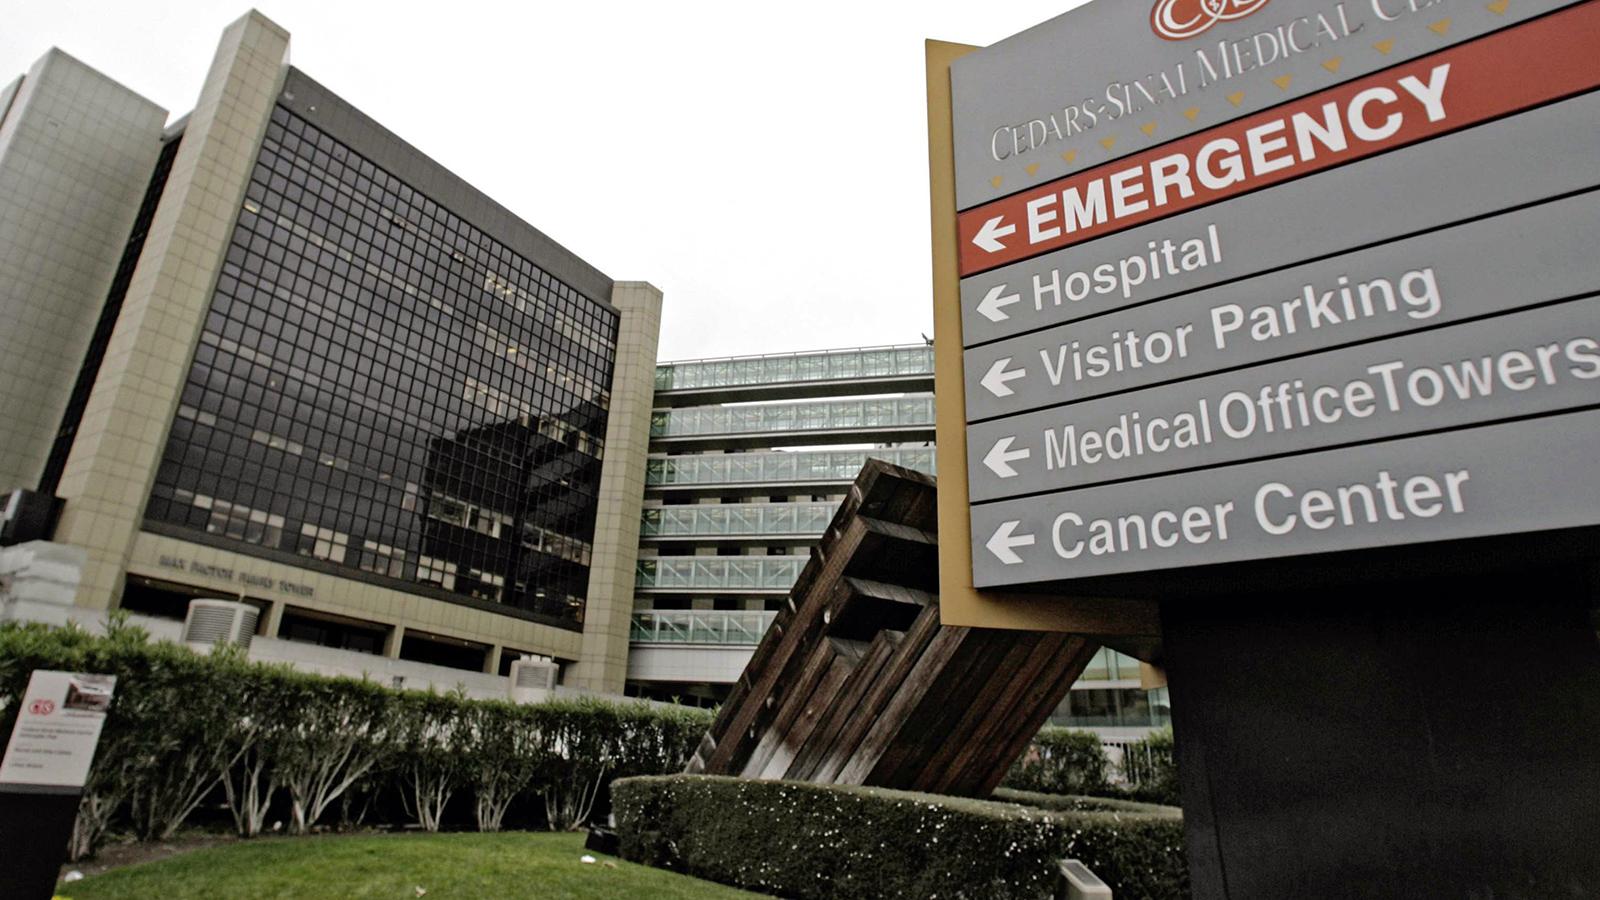 Cedars-Sinai medical center i Los Angeles.